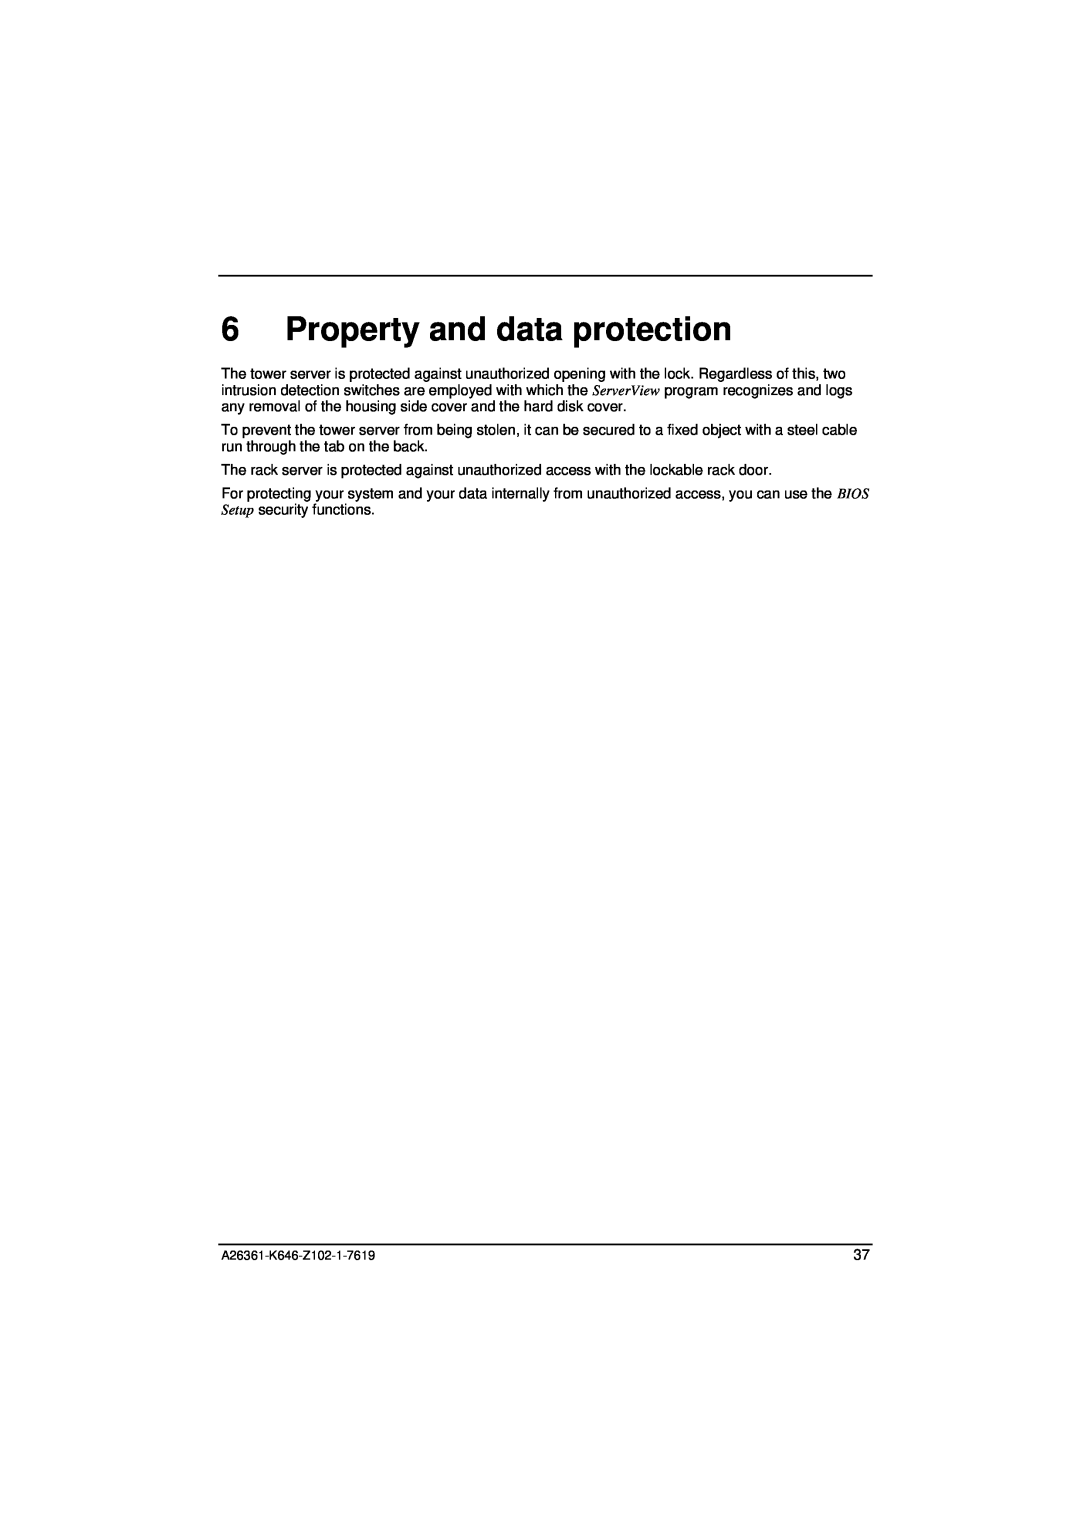 Fujitsu B120 manual Property and data protection 